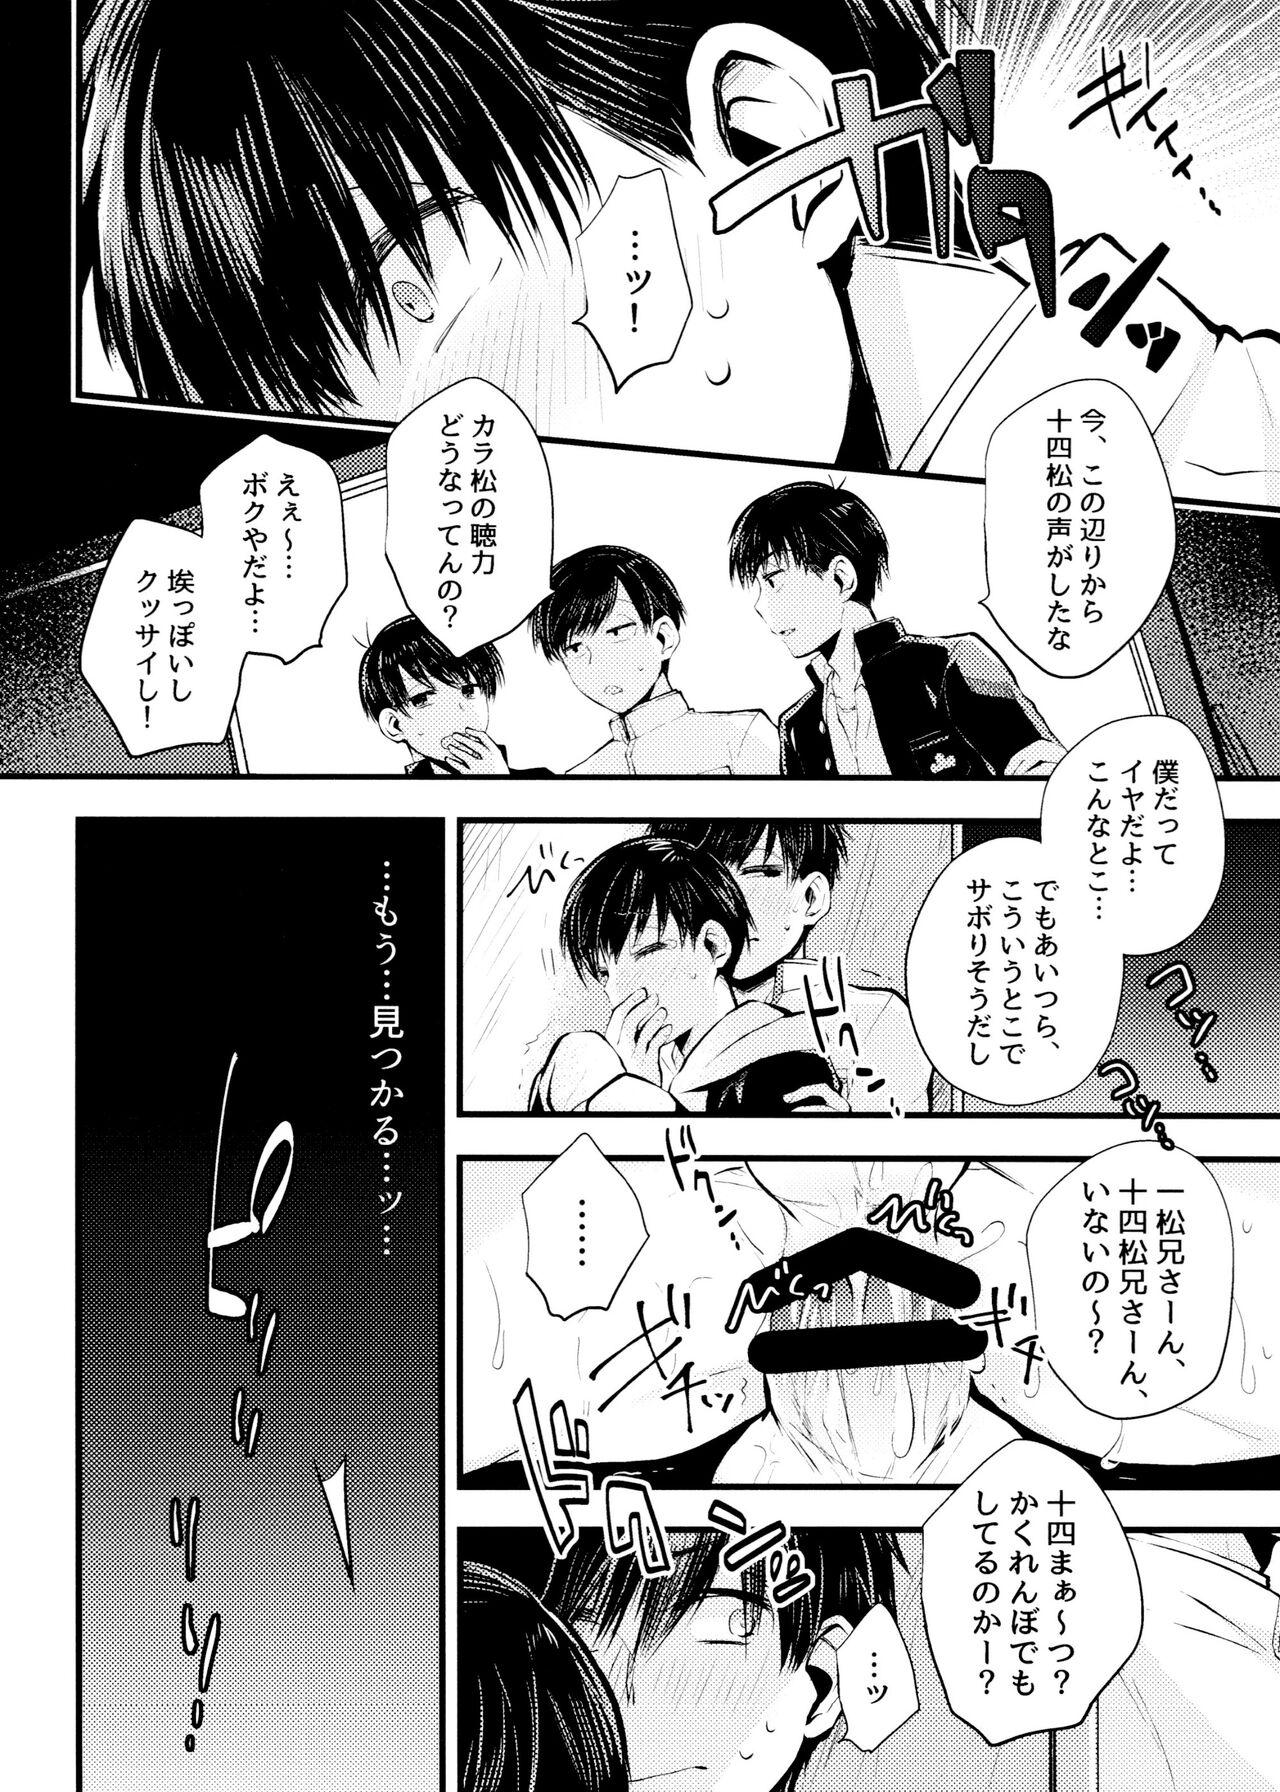 Cosplay aru sekai no hanashi - Osomatsu san Girlfriends - Page 10